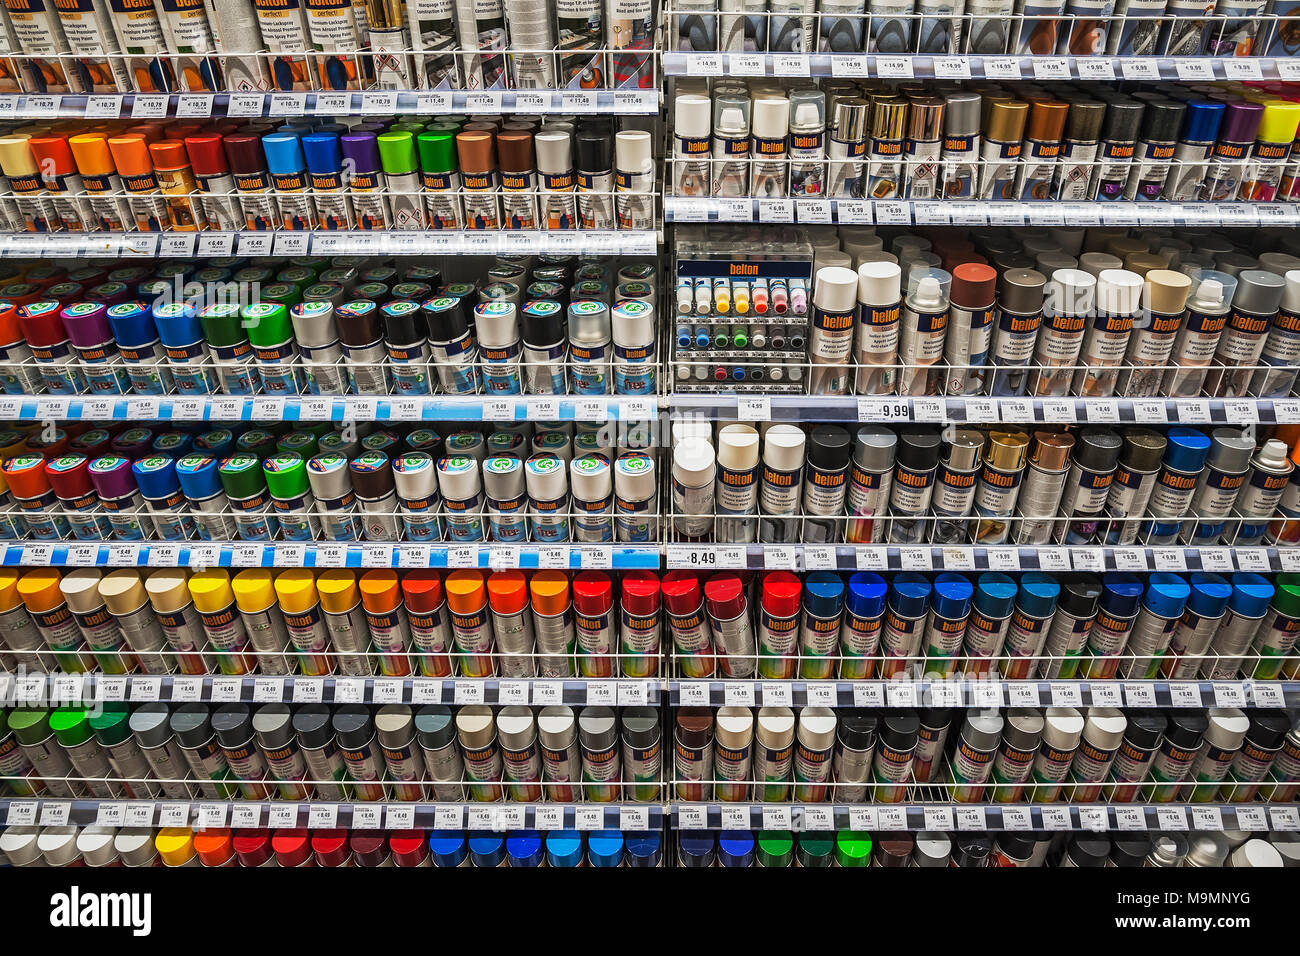 Pittore forniture, ripiano con pitture e vernici, bombolette spray, negozio di ferramenta, interno, Baviera, Germania Foto Stock